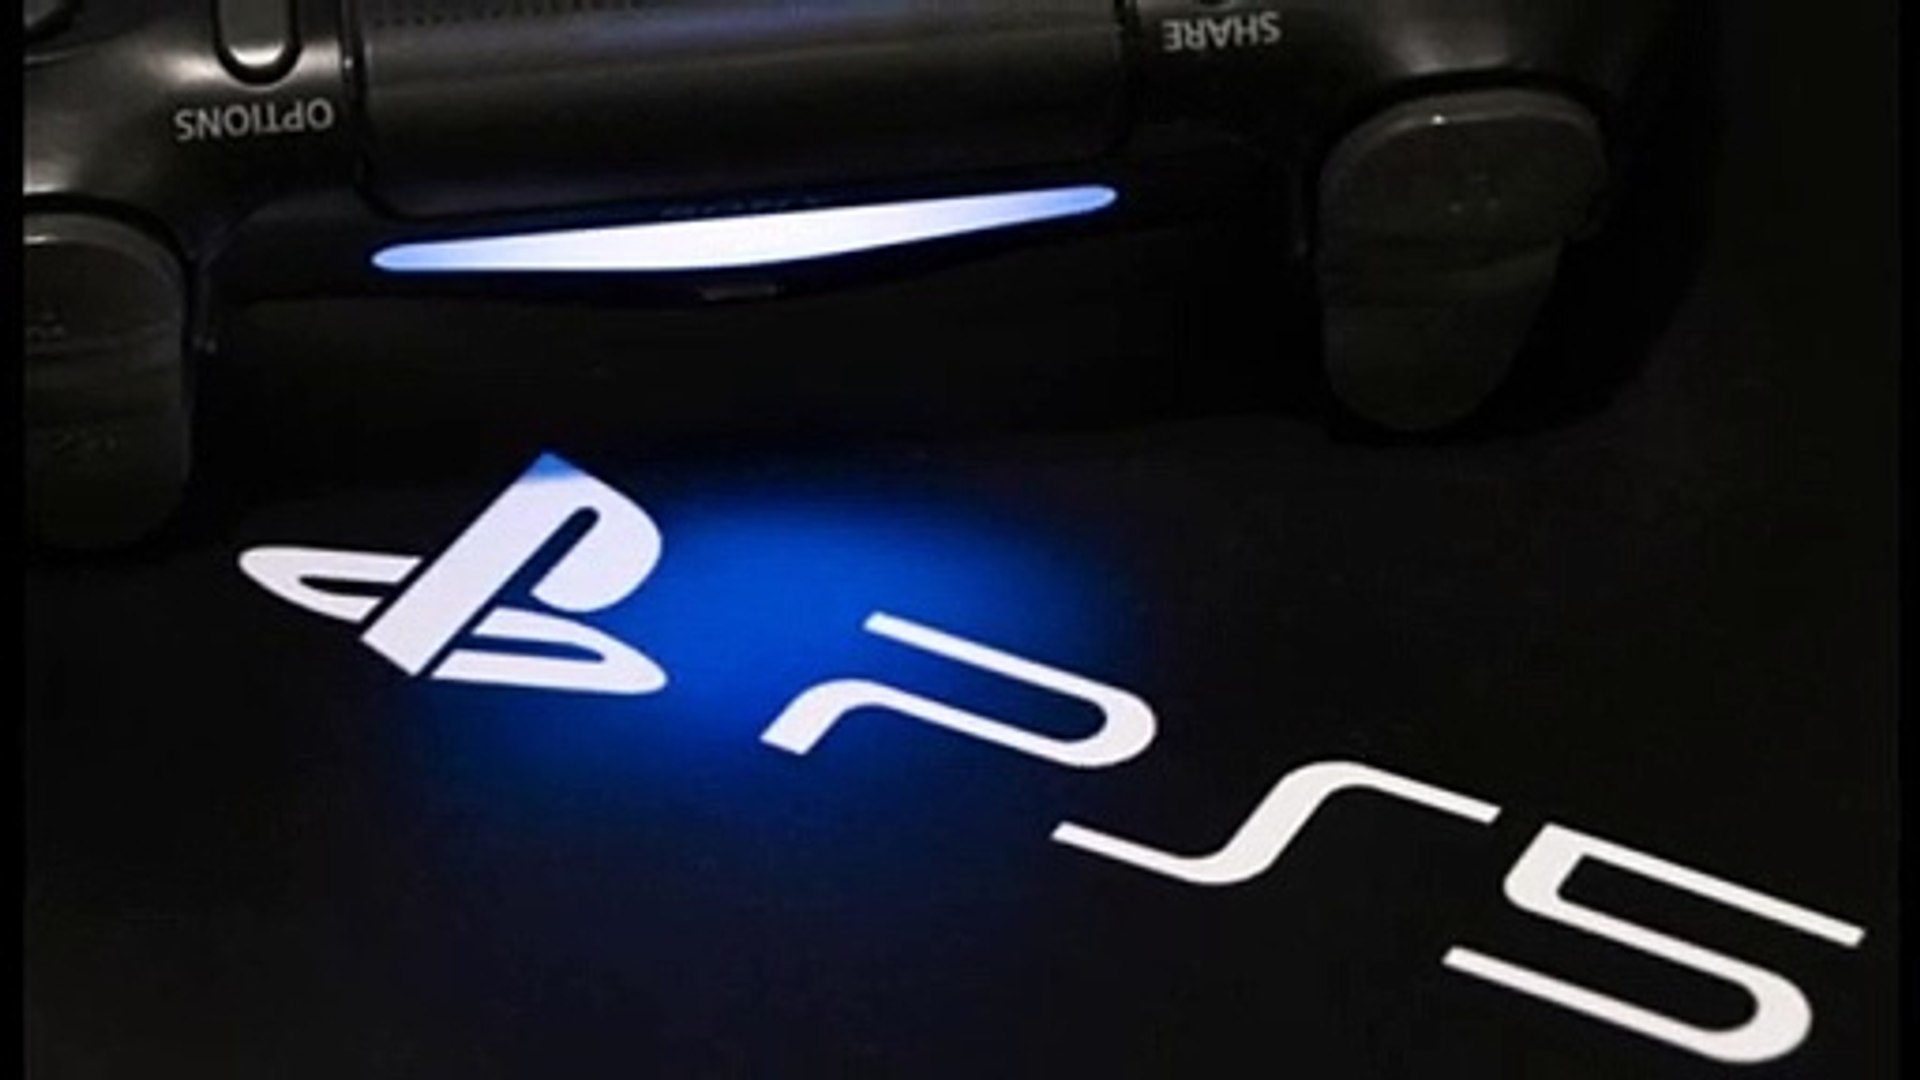 Jogos do PS1, PS2 e PS3 não vão rodar no PS5, confirma Ubisoft